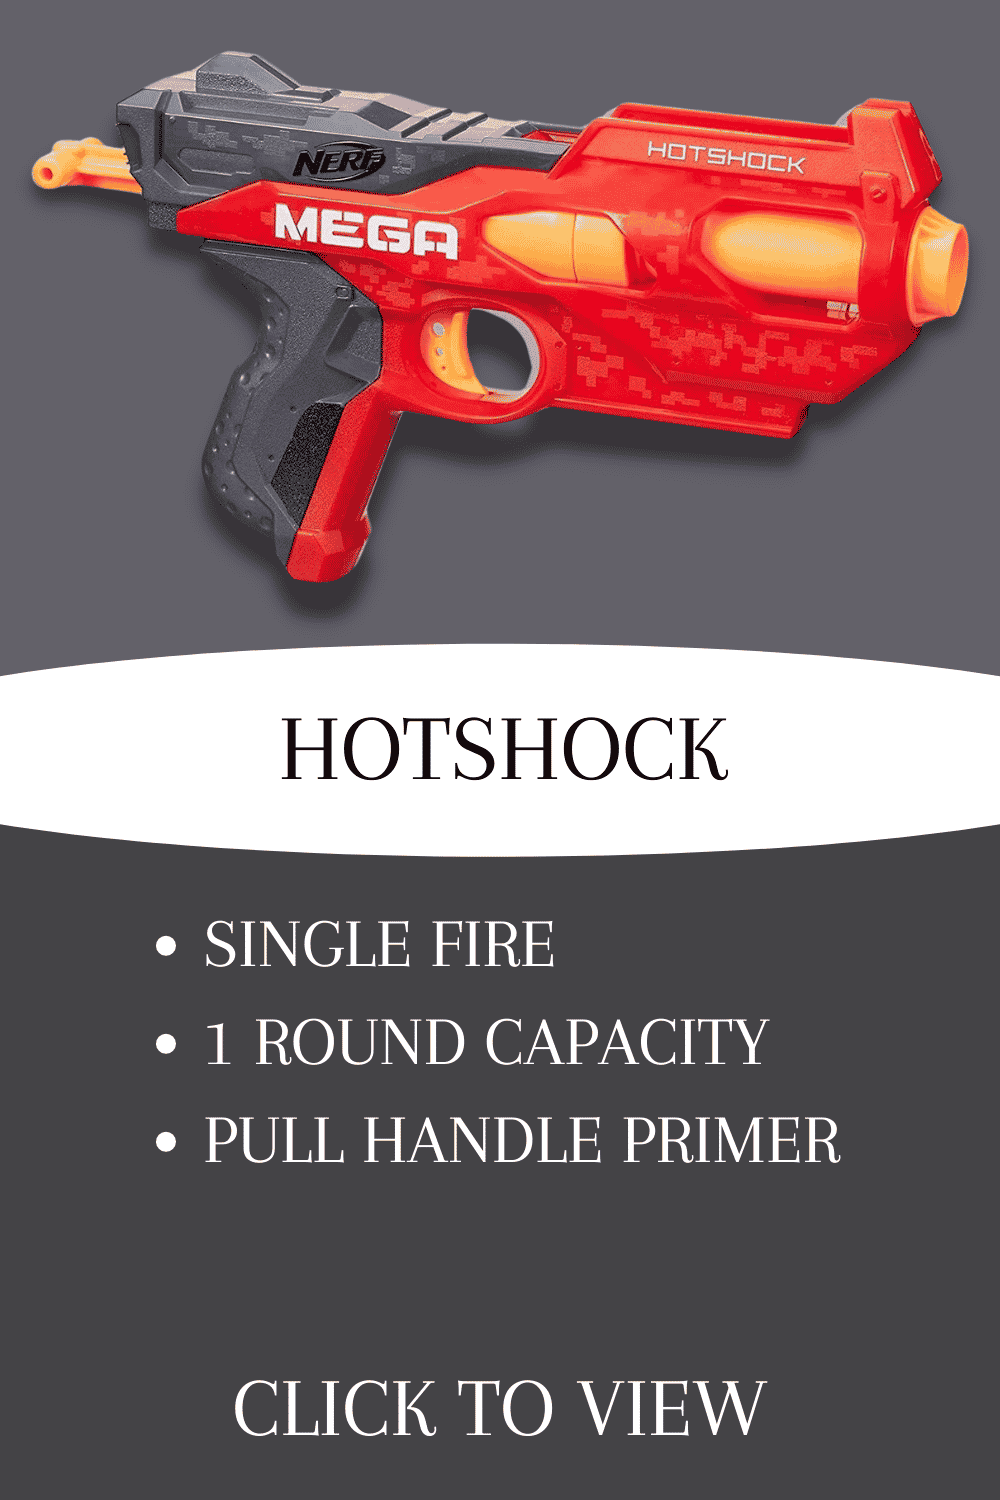 nerf n-strike mega hotshock